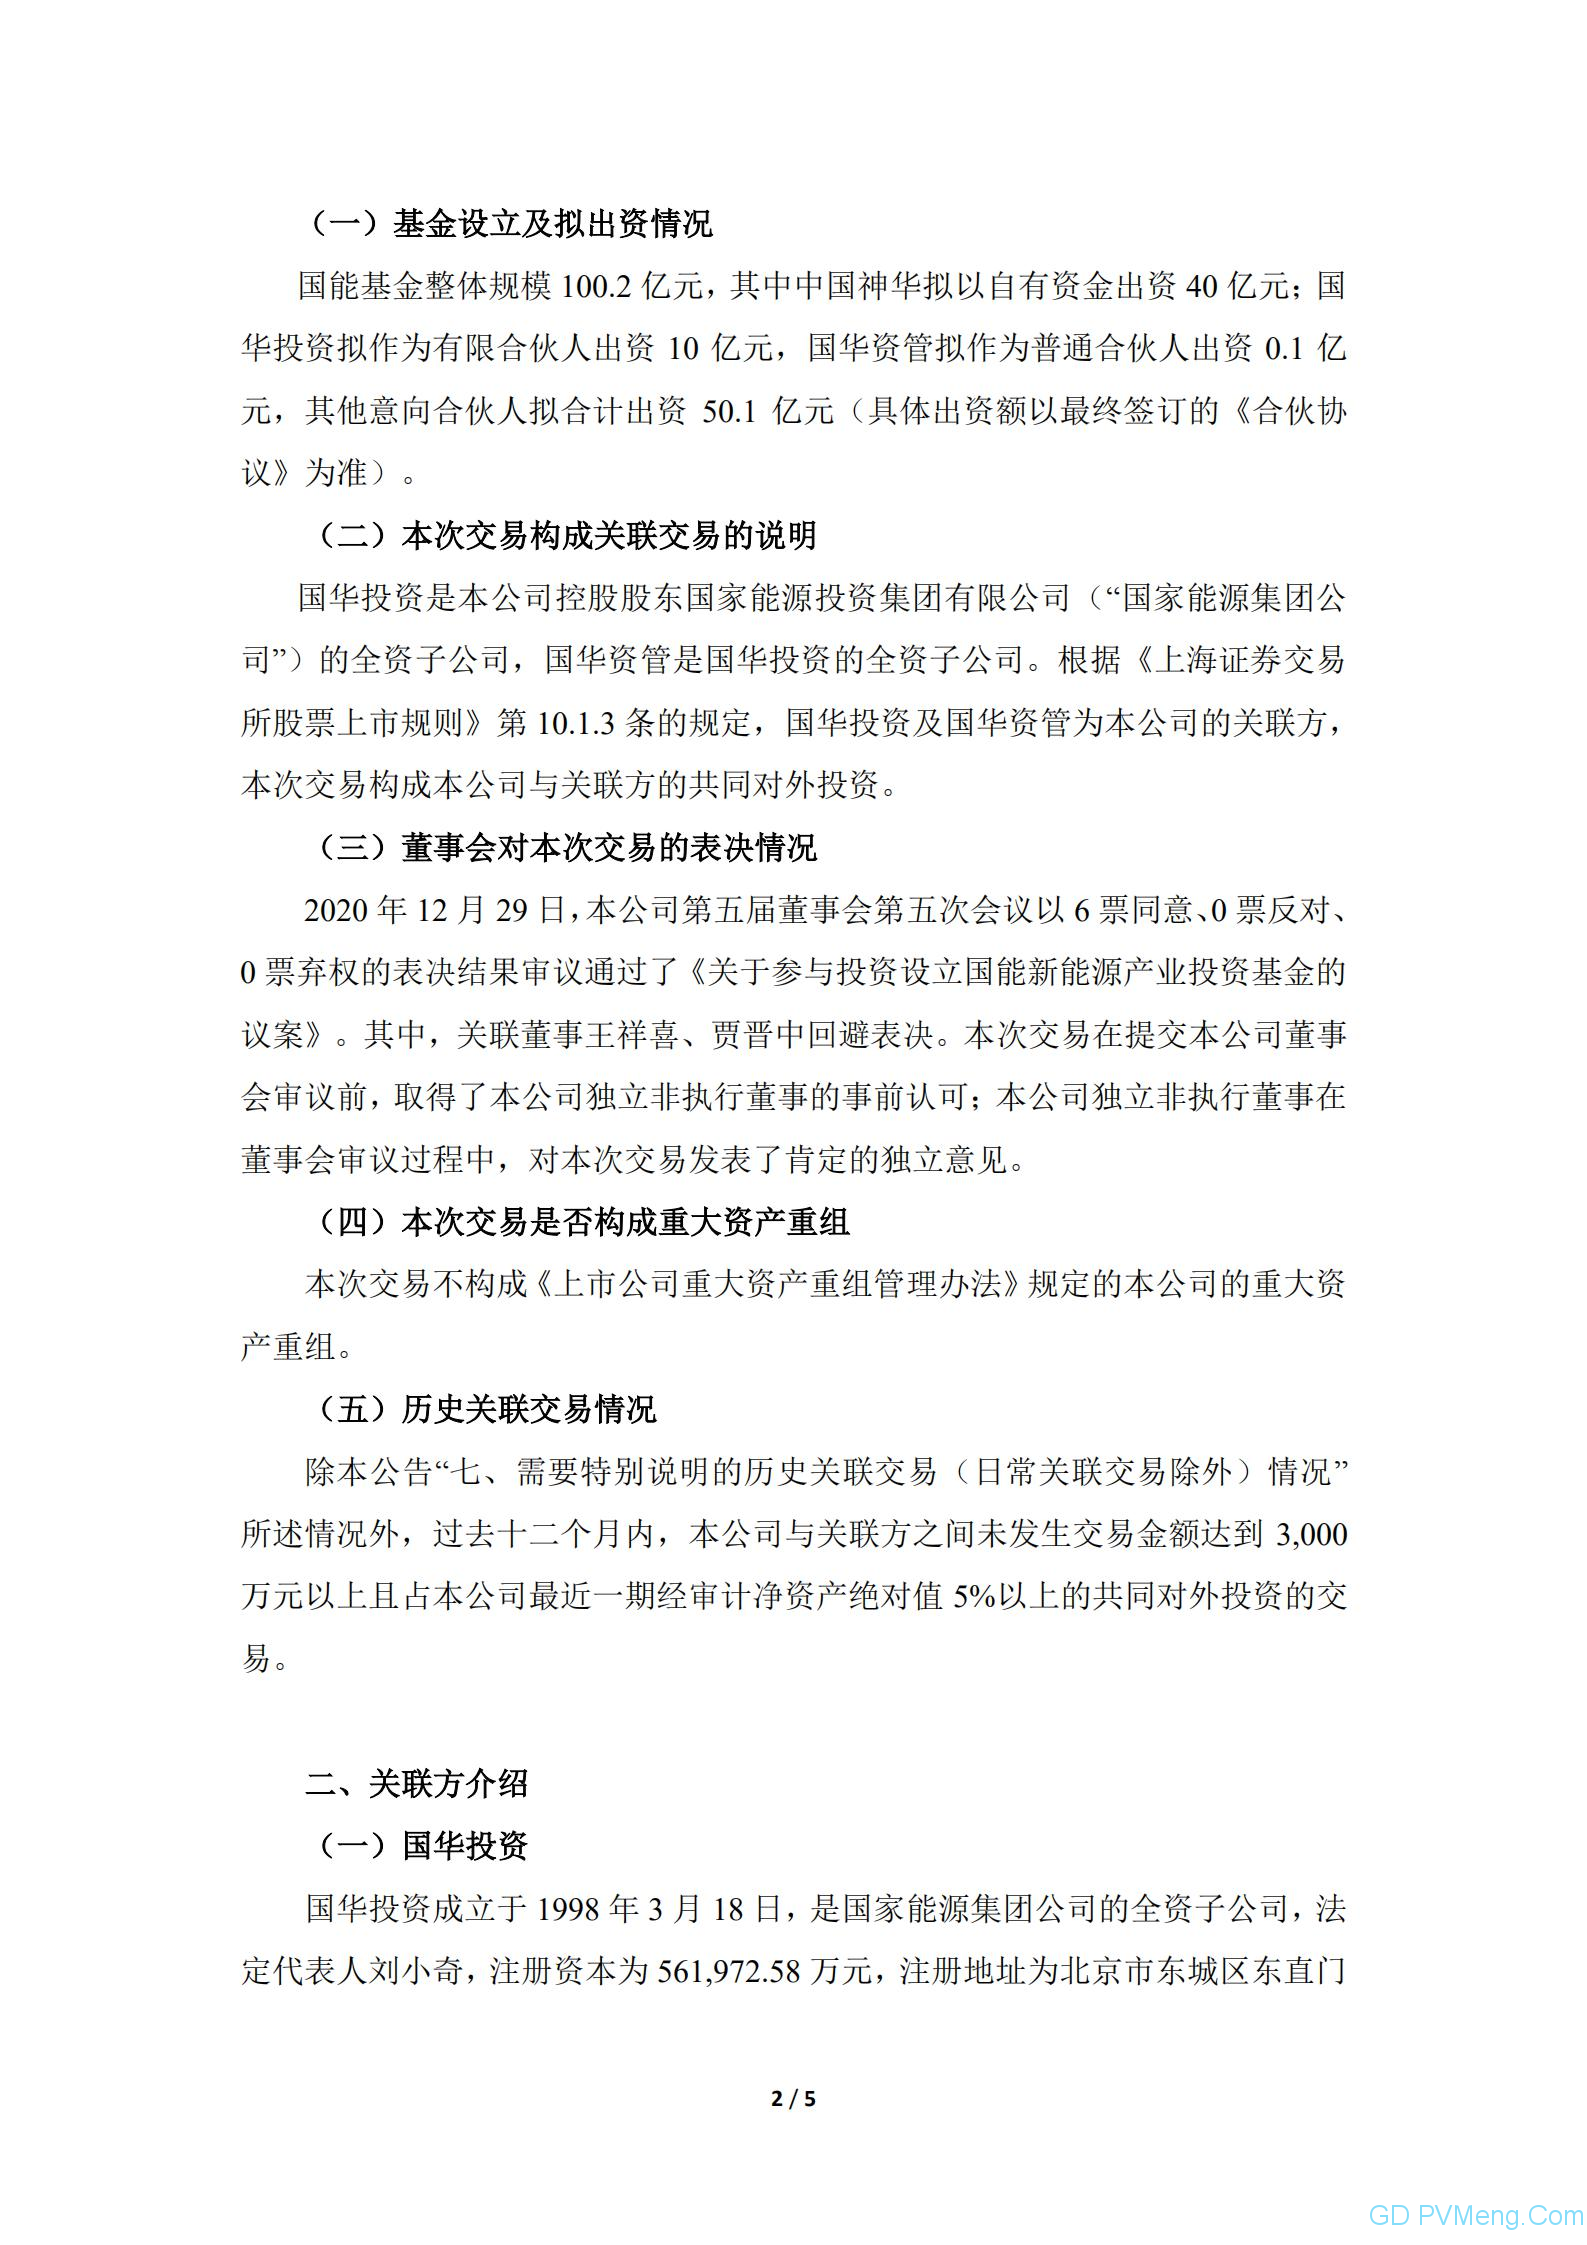 中国神华：关于参与设立产业基金暨关联交易的公告20201229